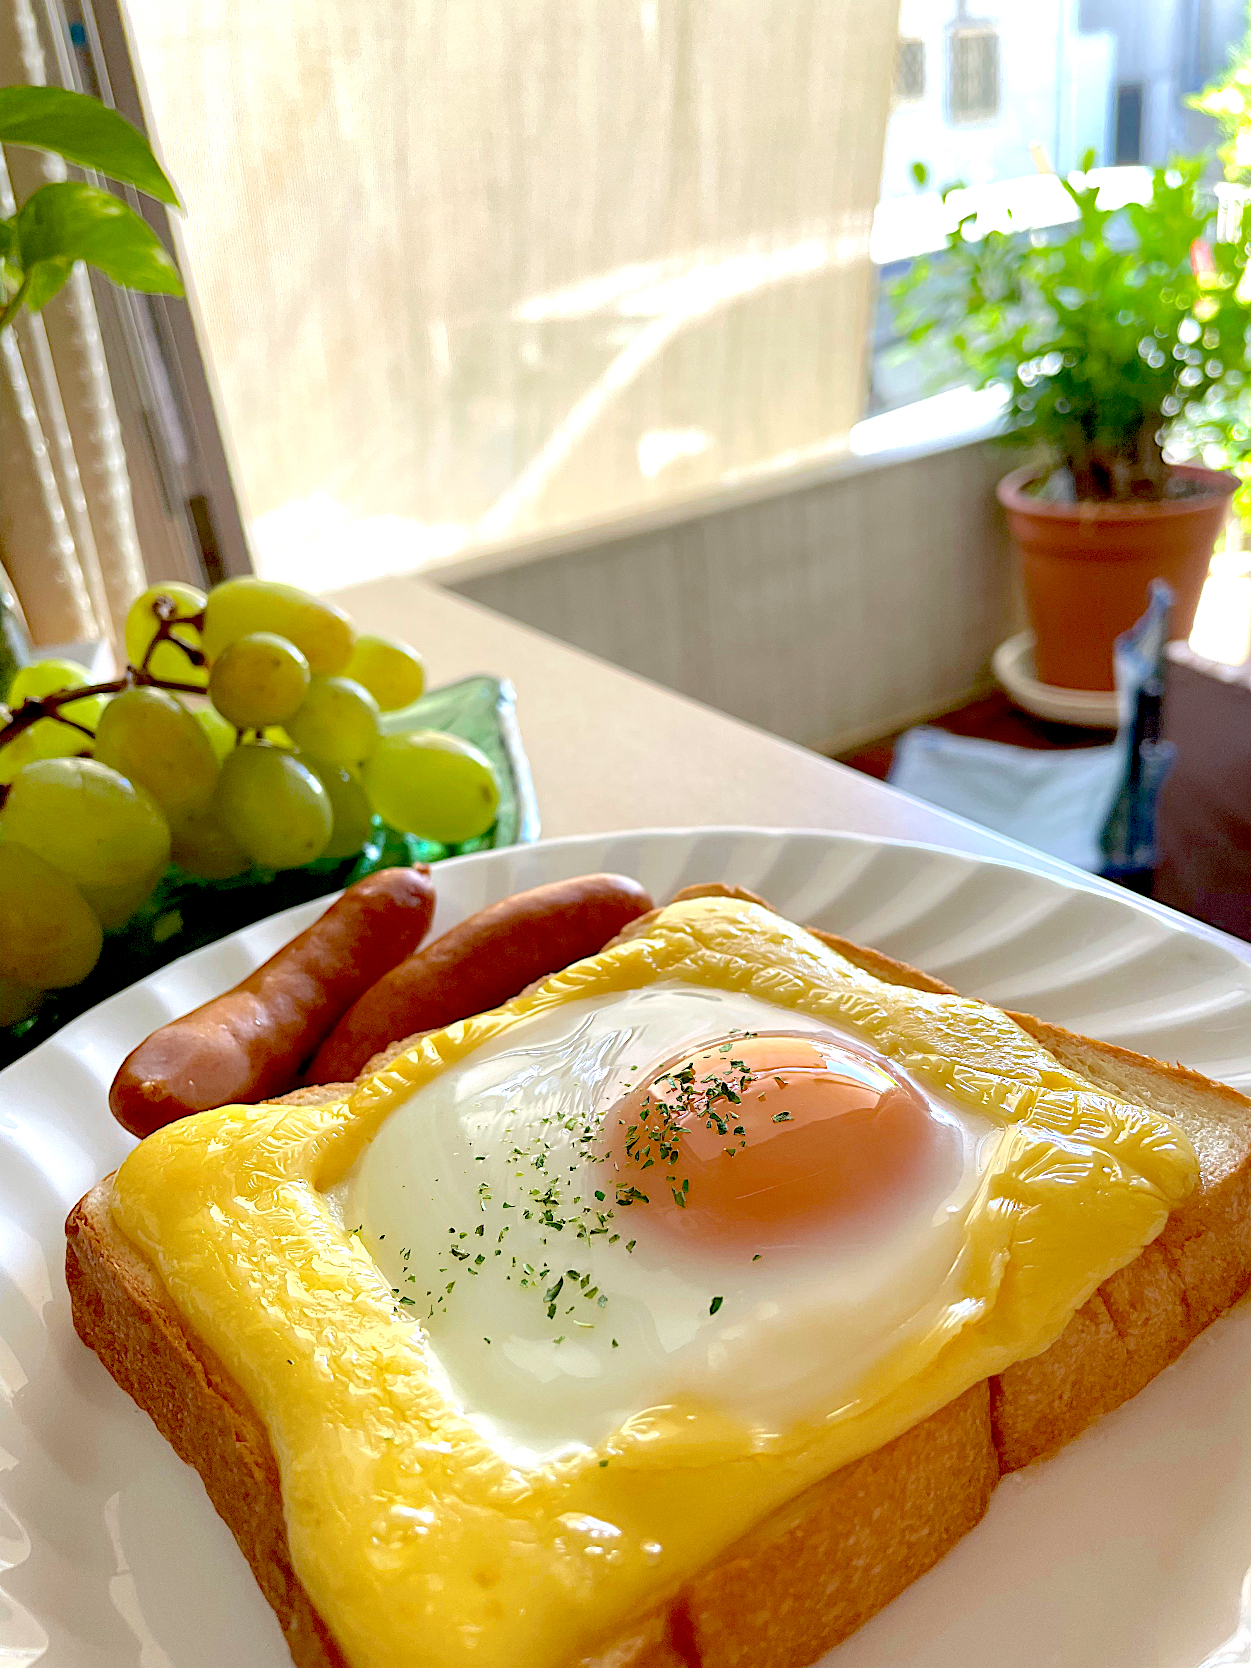 今日の朝ごはんはトーストの卵乗せ